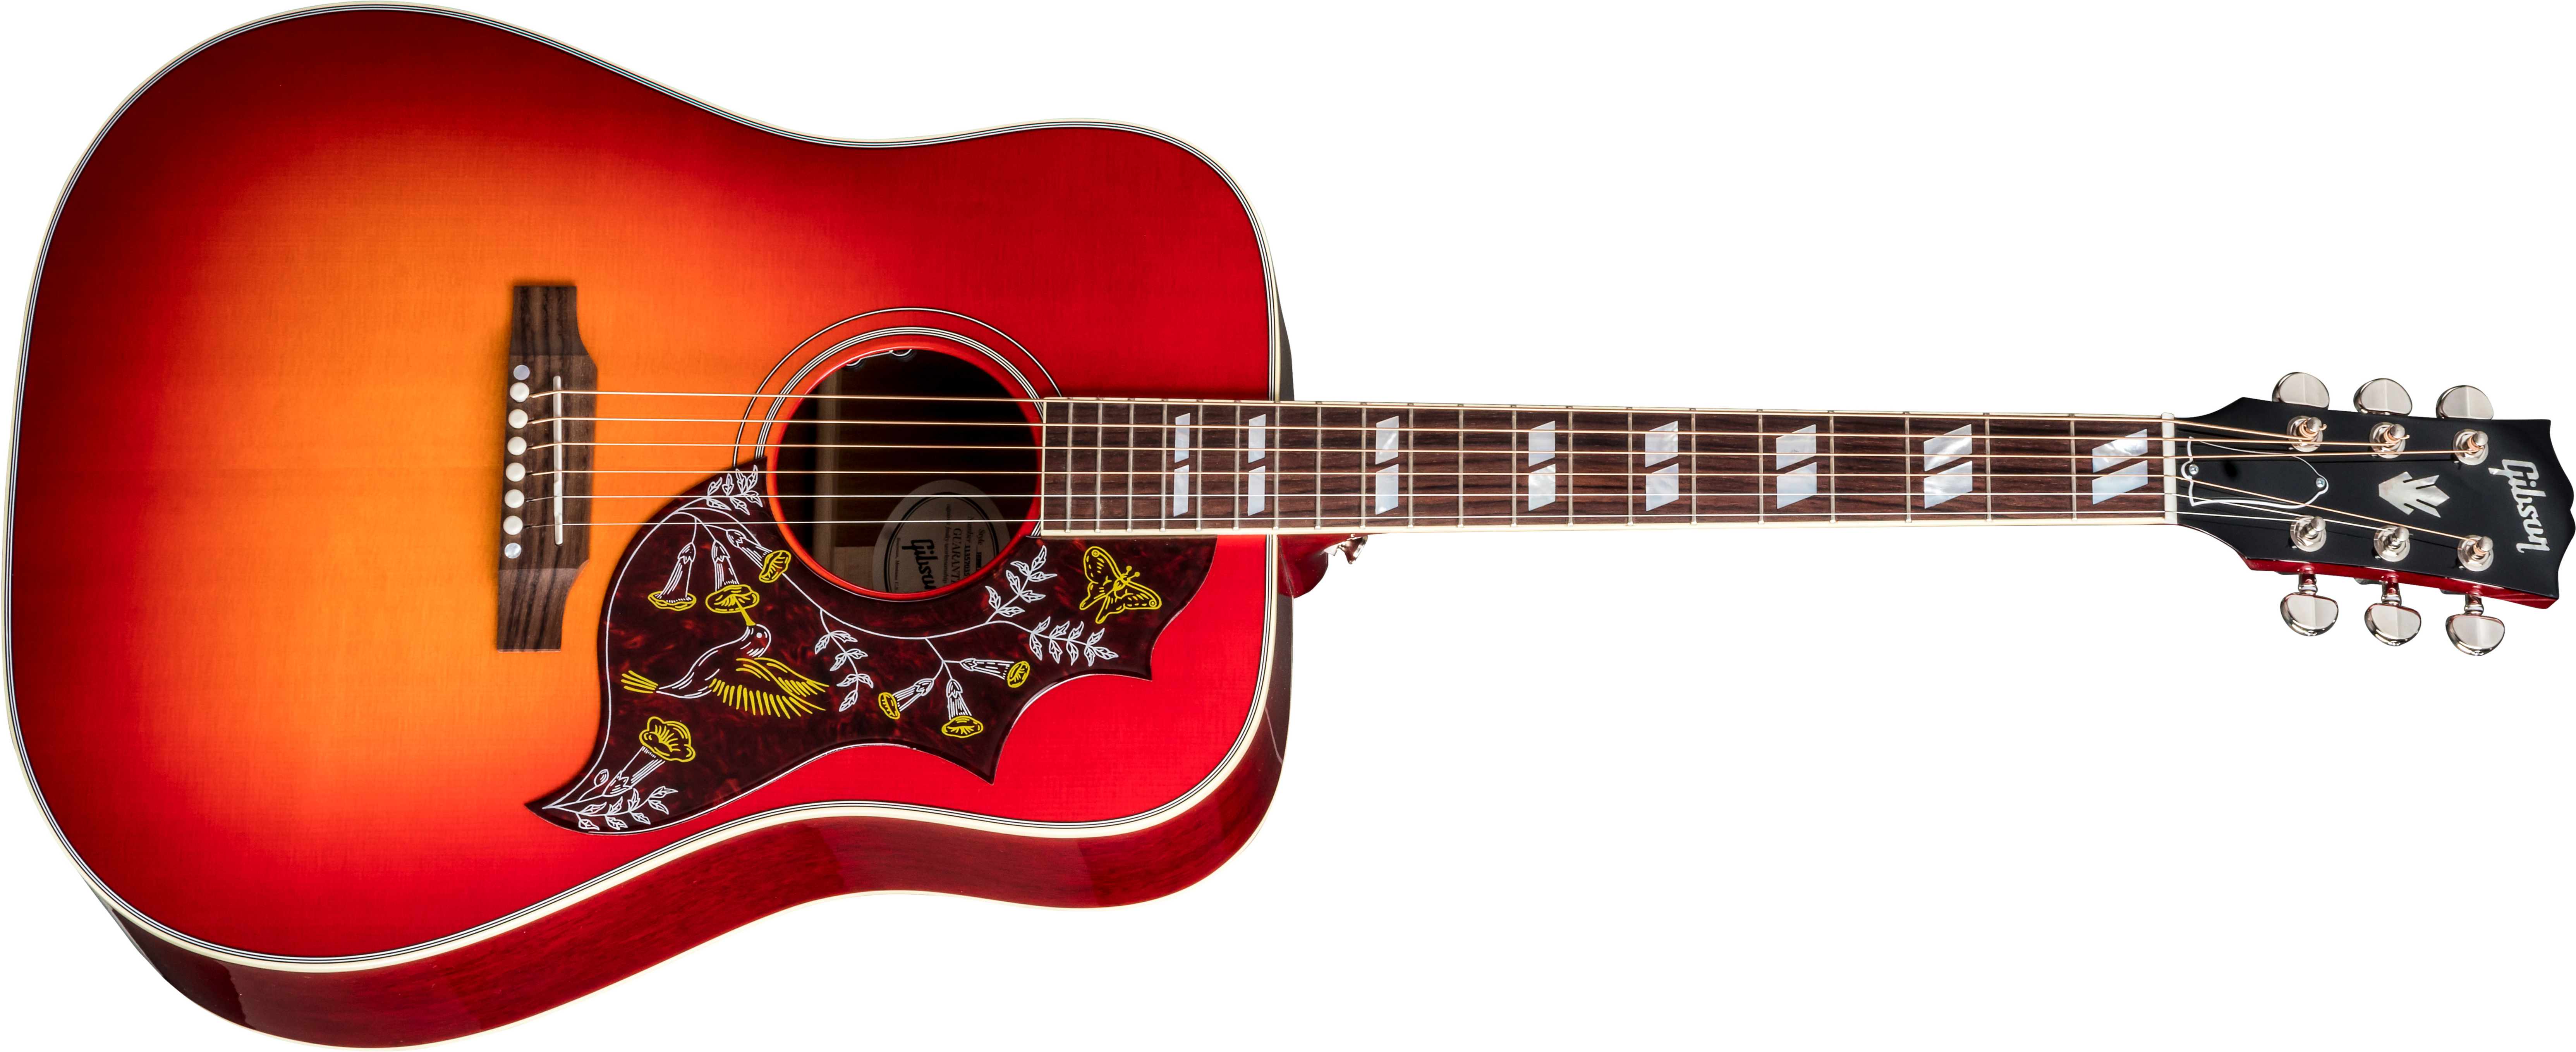 Gibson Hummingbird 2019 Dreadnought Epicea Acajou Rw - Vintage Cherry Sunburst - Westerngitarre & electro - Main picture